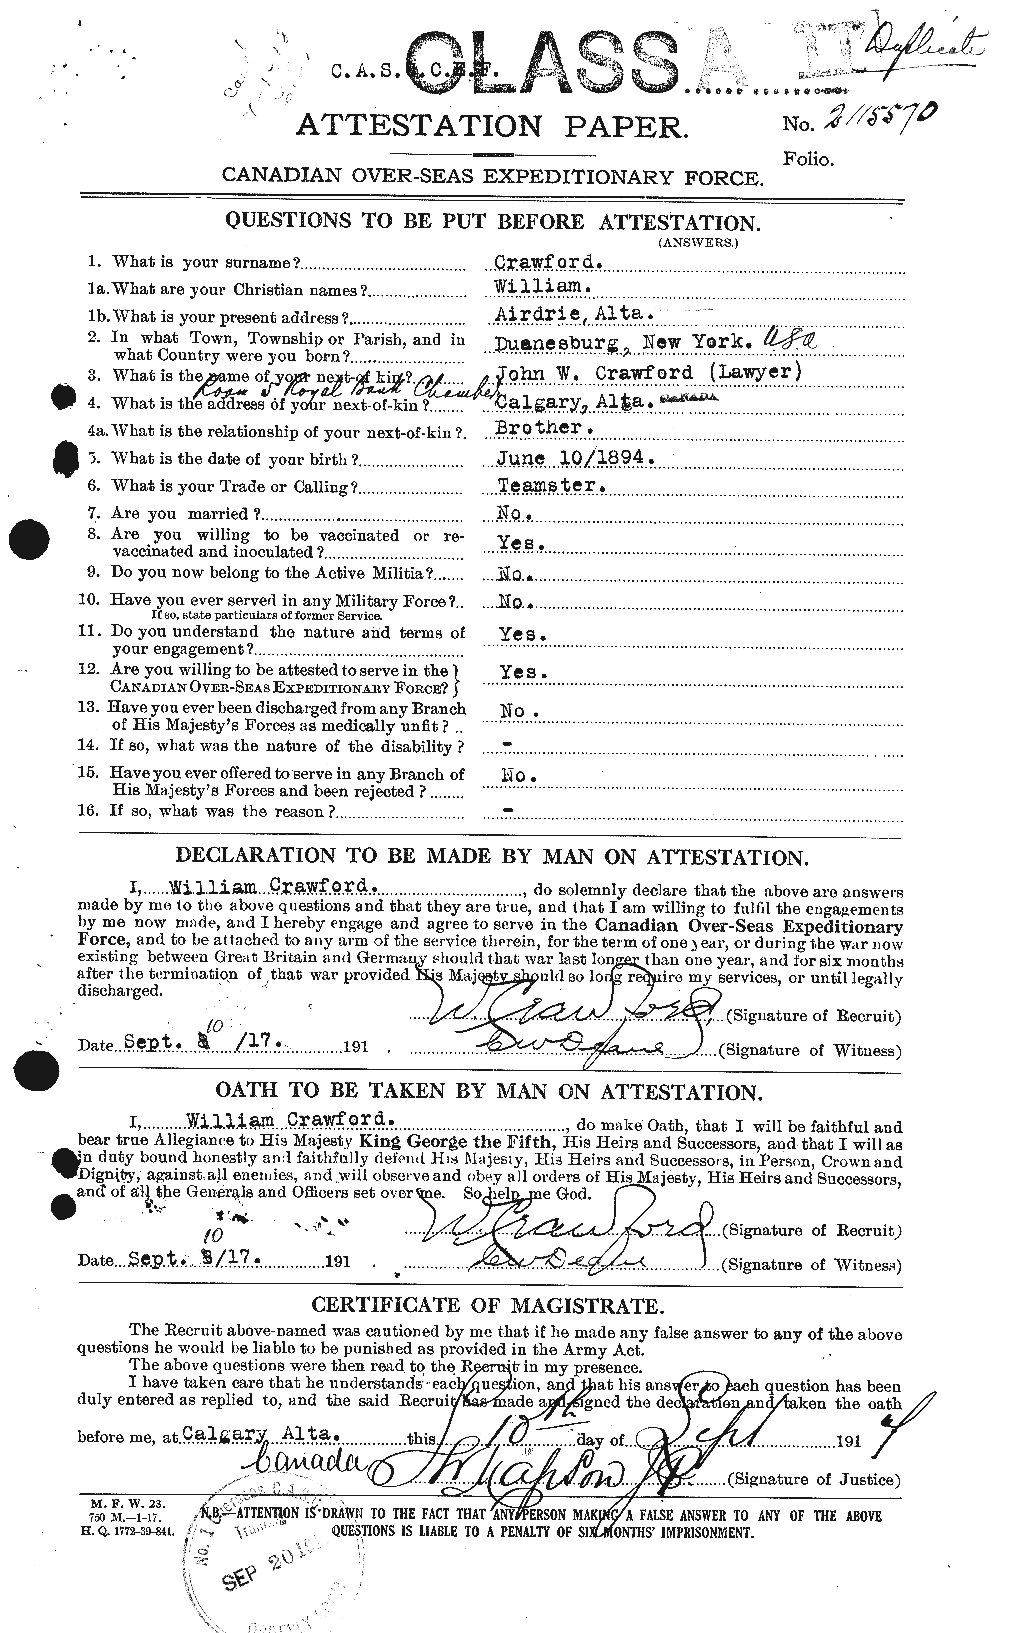 Dossiers du Personnel de la Première Guerre mondiale - CEC 061155a